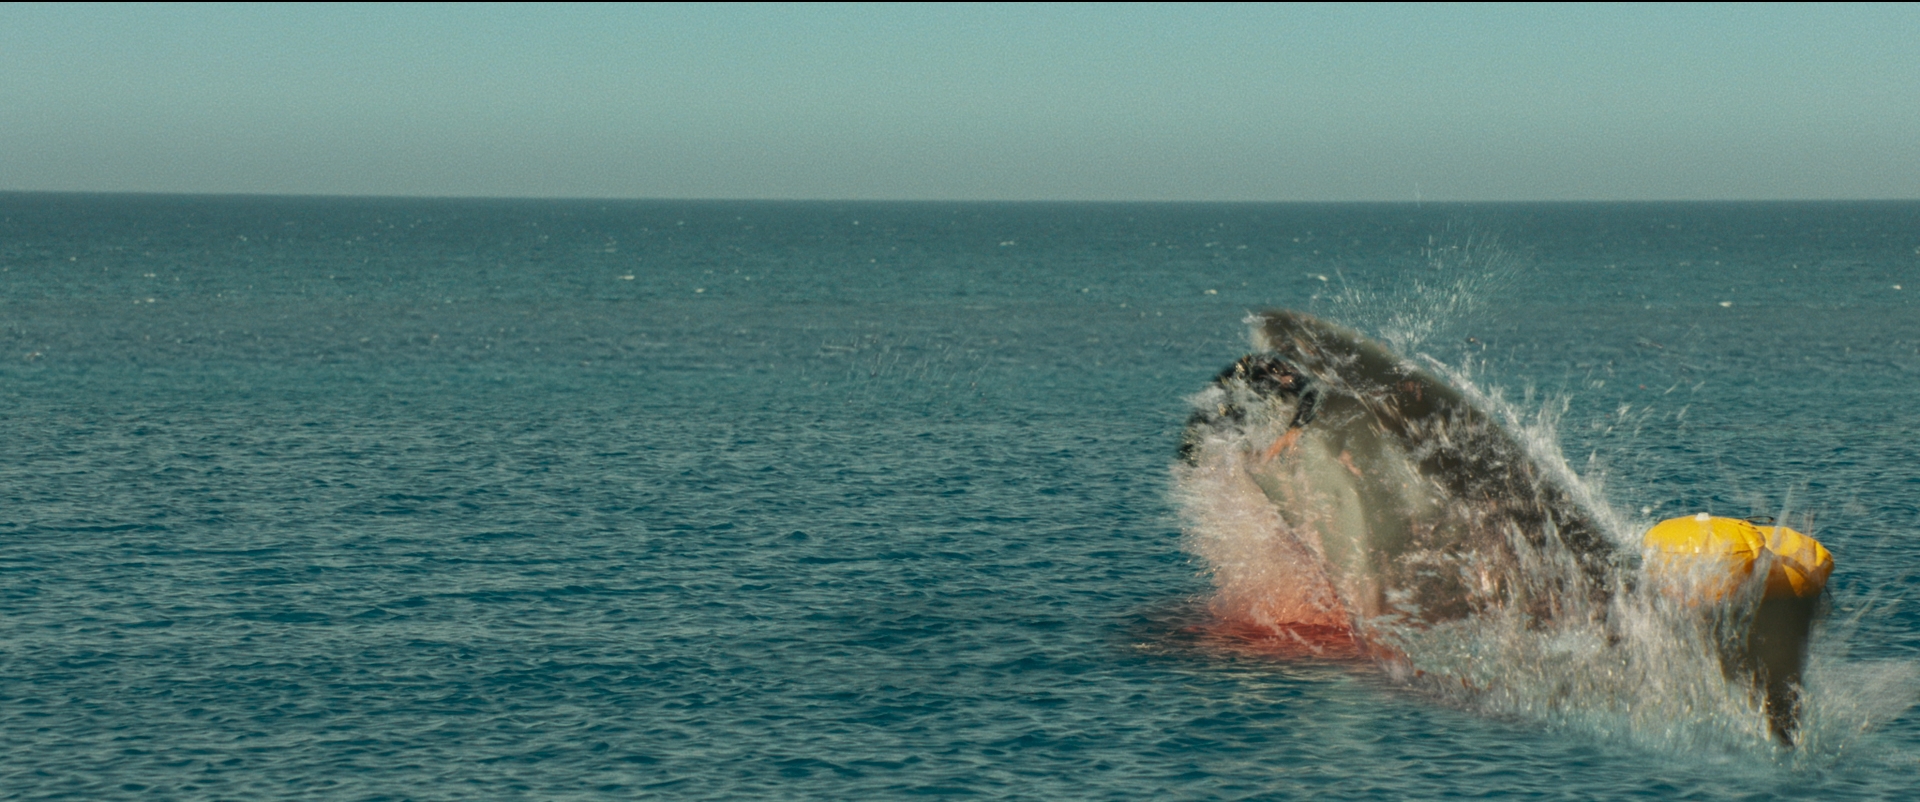 Hàm Tử Thần - Tựa phim rùng rợn xoay quanh đàn cá mập khát máu đáng xem bậc nhất hè này - Ảnh 2.